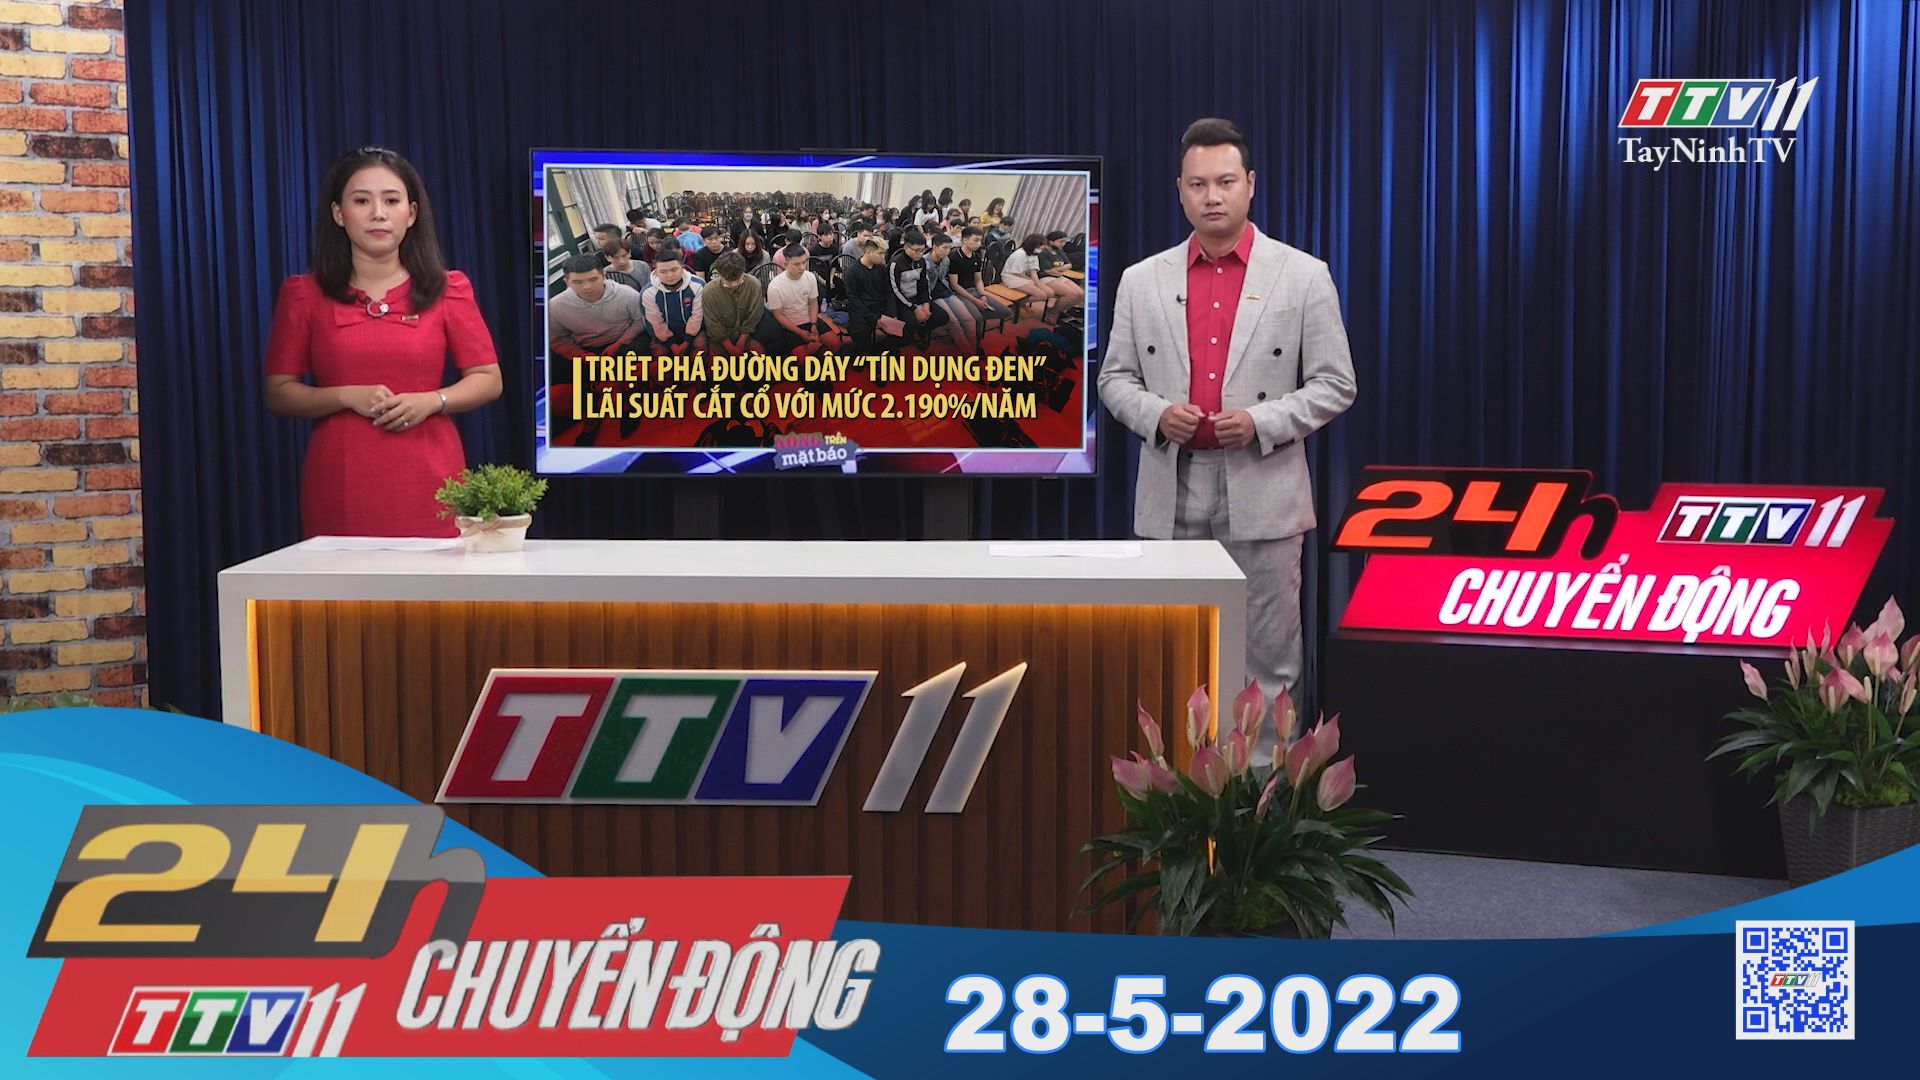 24h Chuyển động 28-5-2022 | Tin tức hôm nay | TayNinhTV